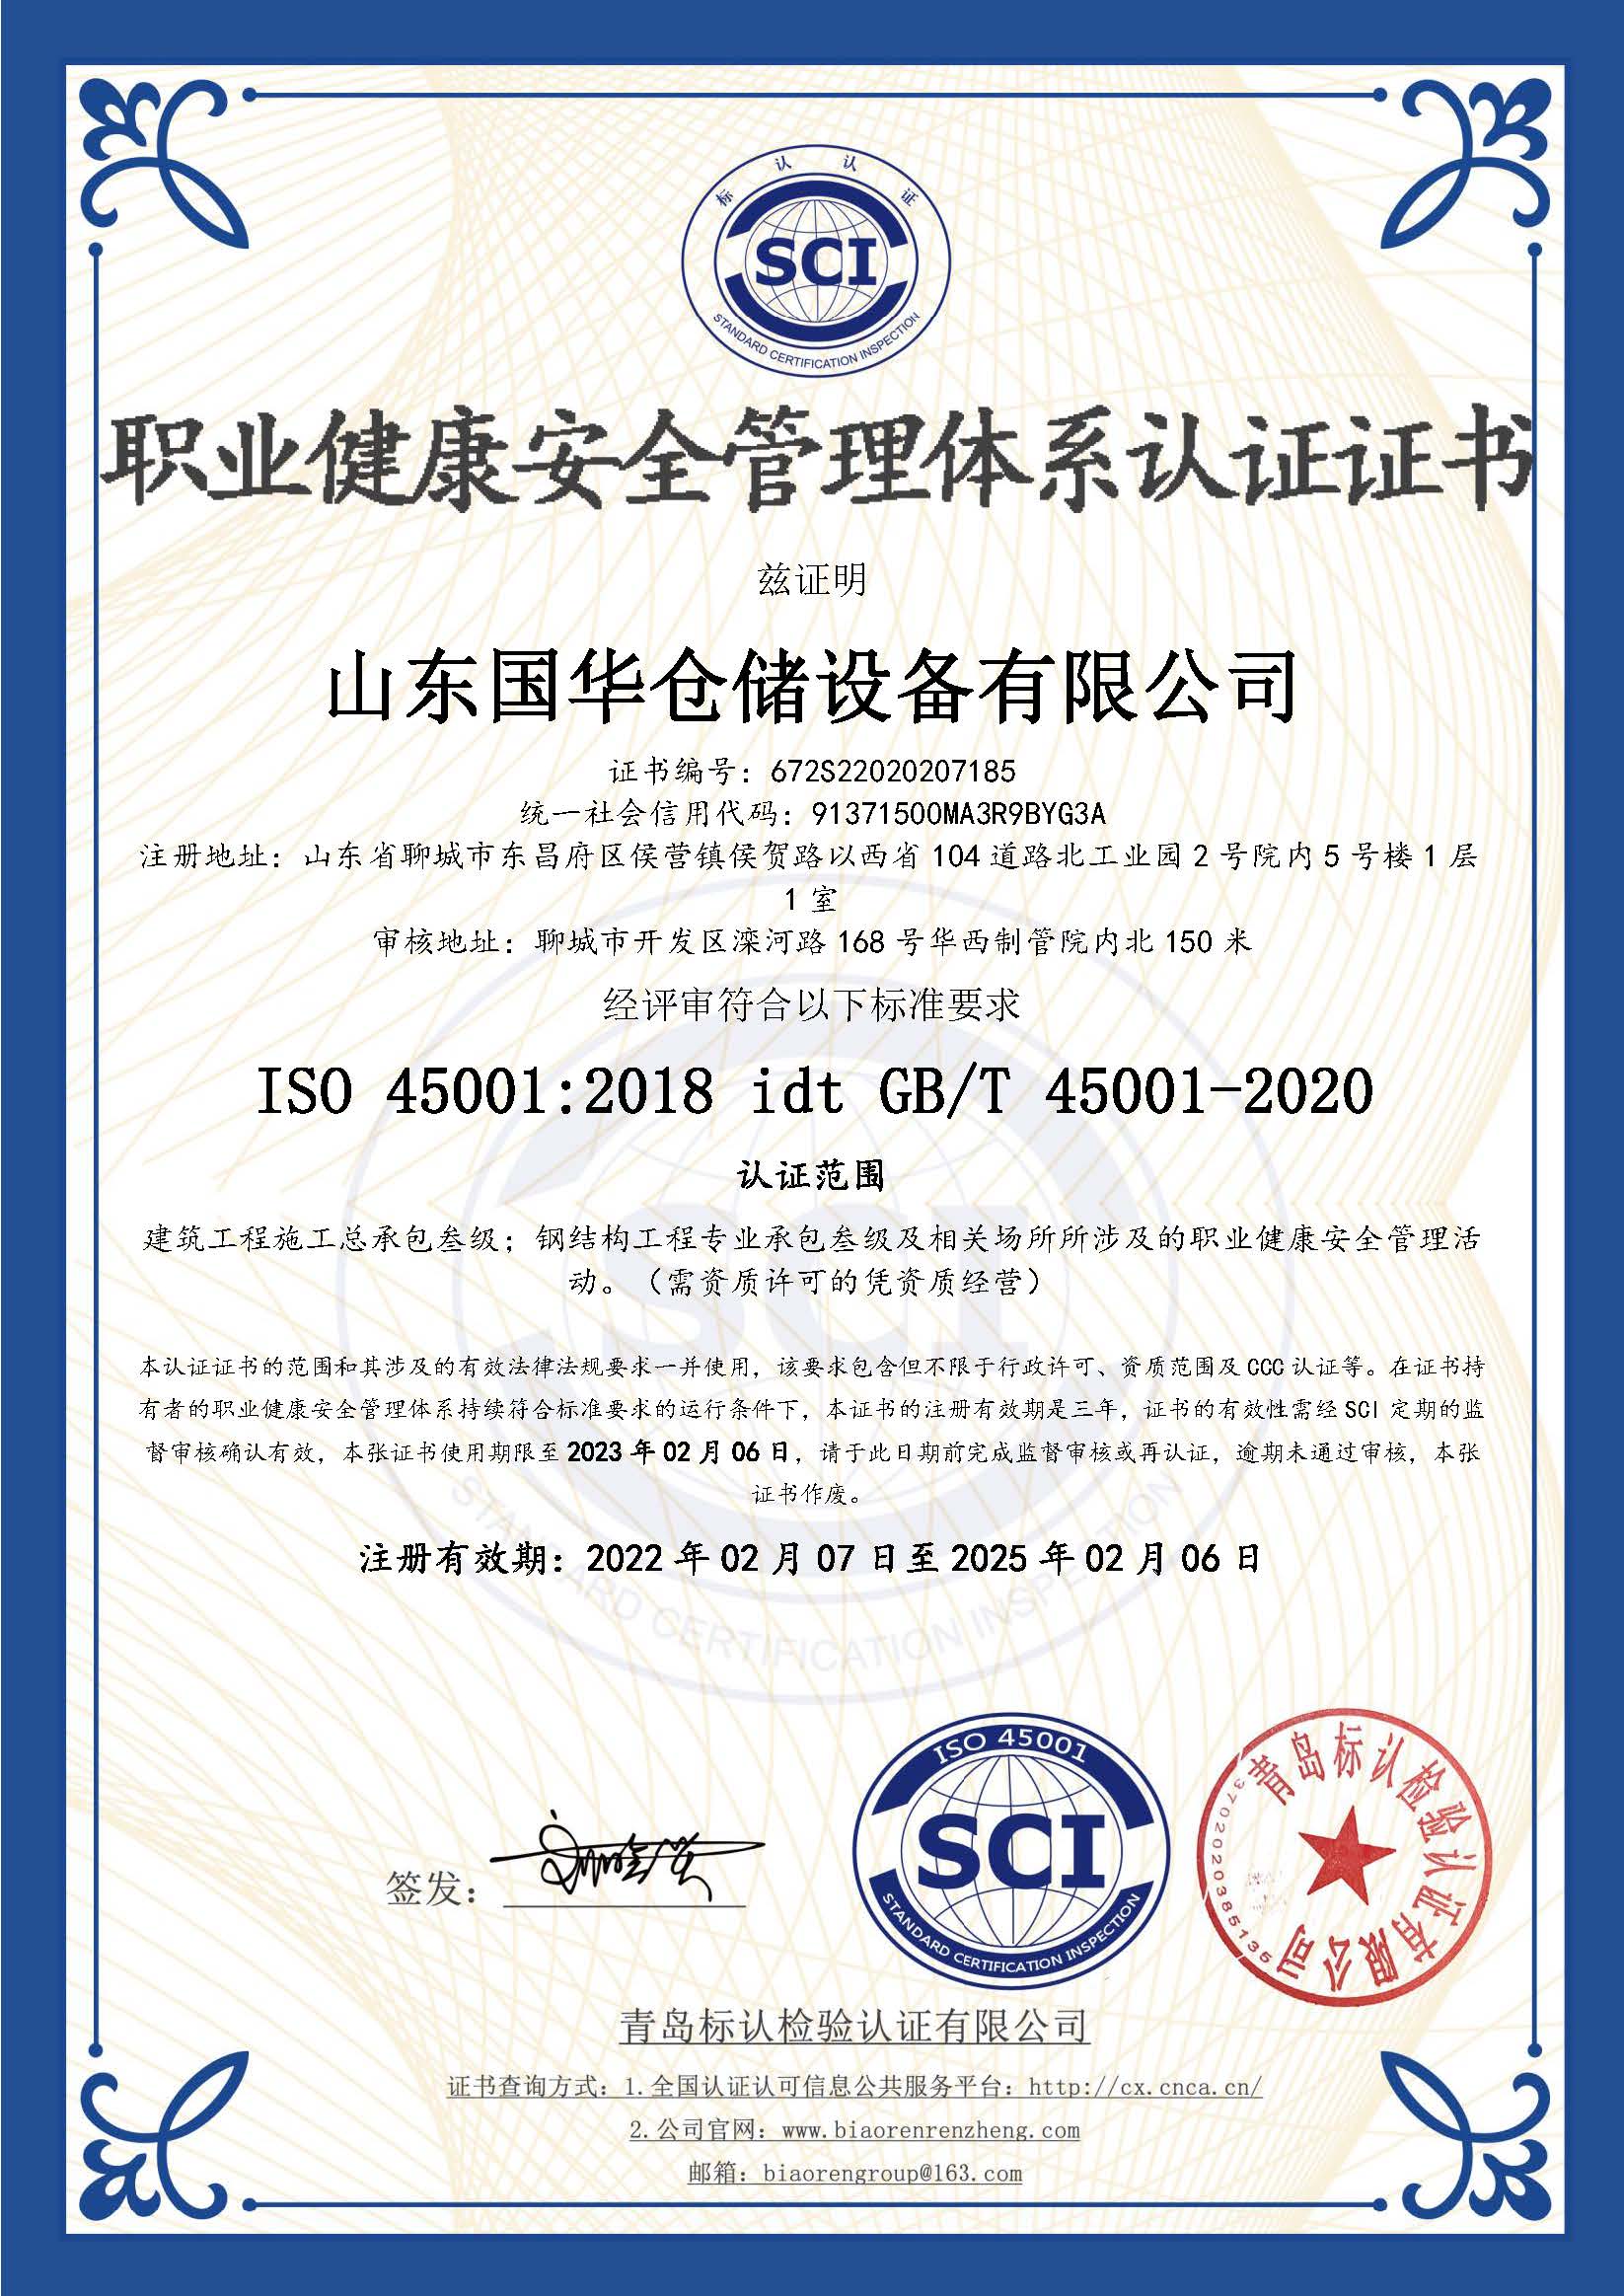 白沙钢板仓职业健康安全管理体系认证证书